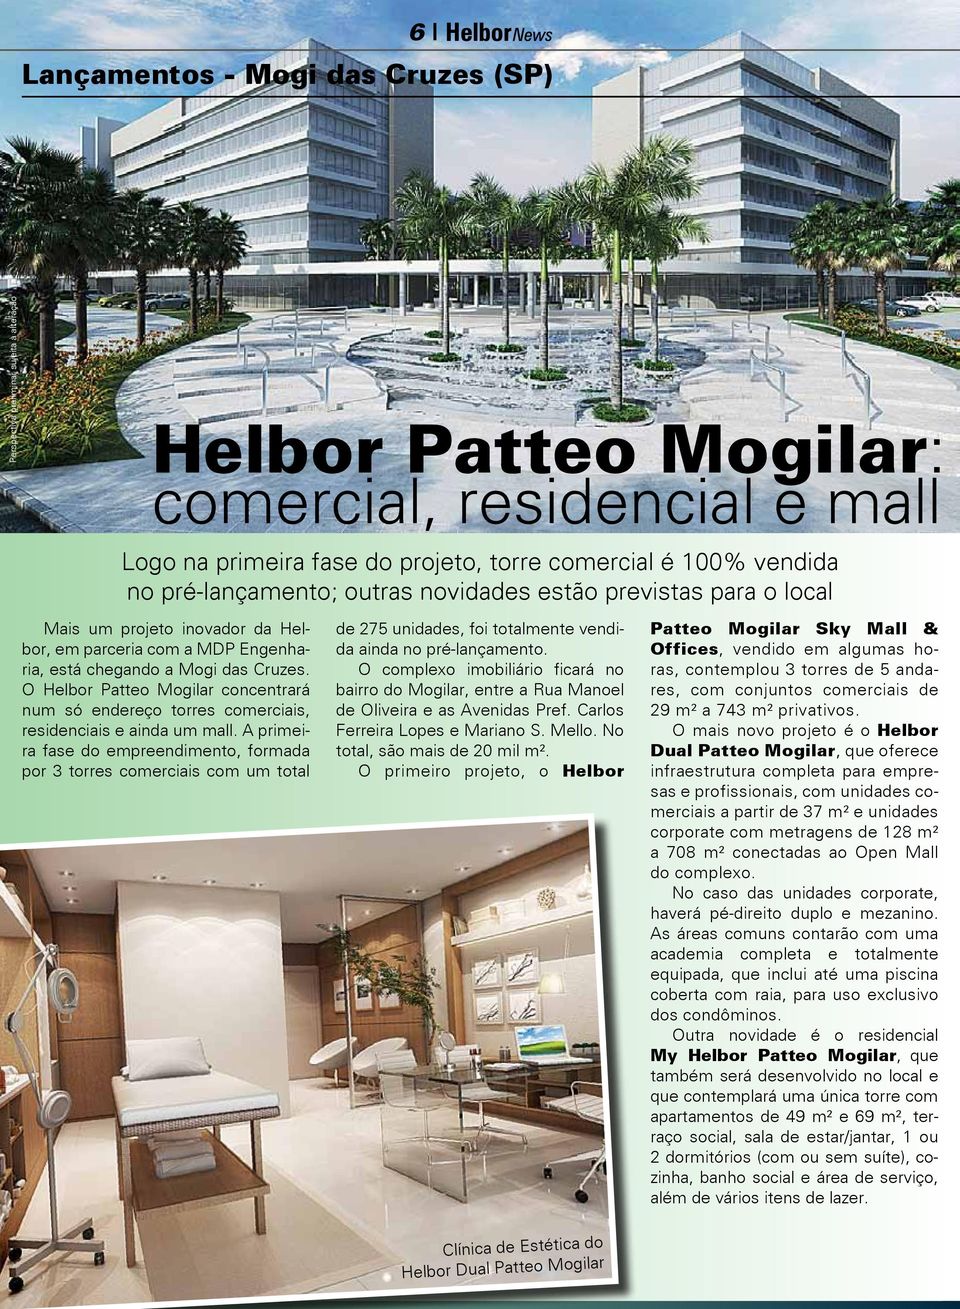 O Helbor Patteo Mogilar concentrará num só endereço torres comerciais, residenciais e ainda um mall.